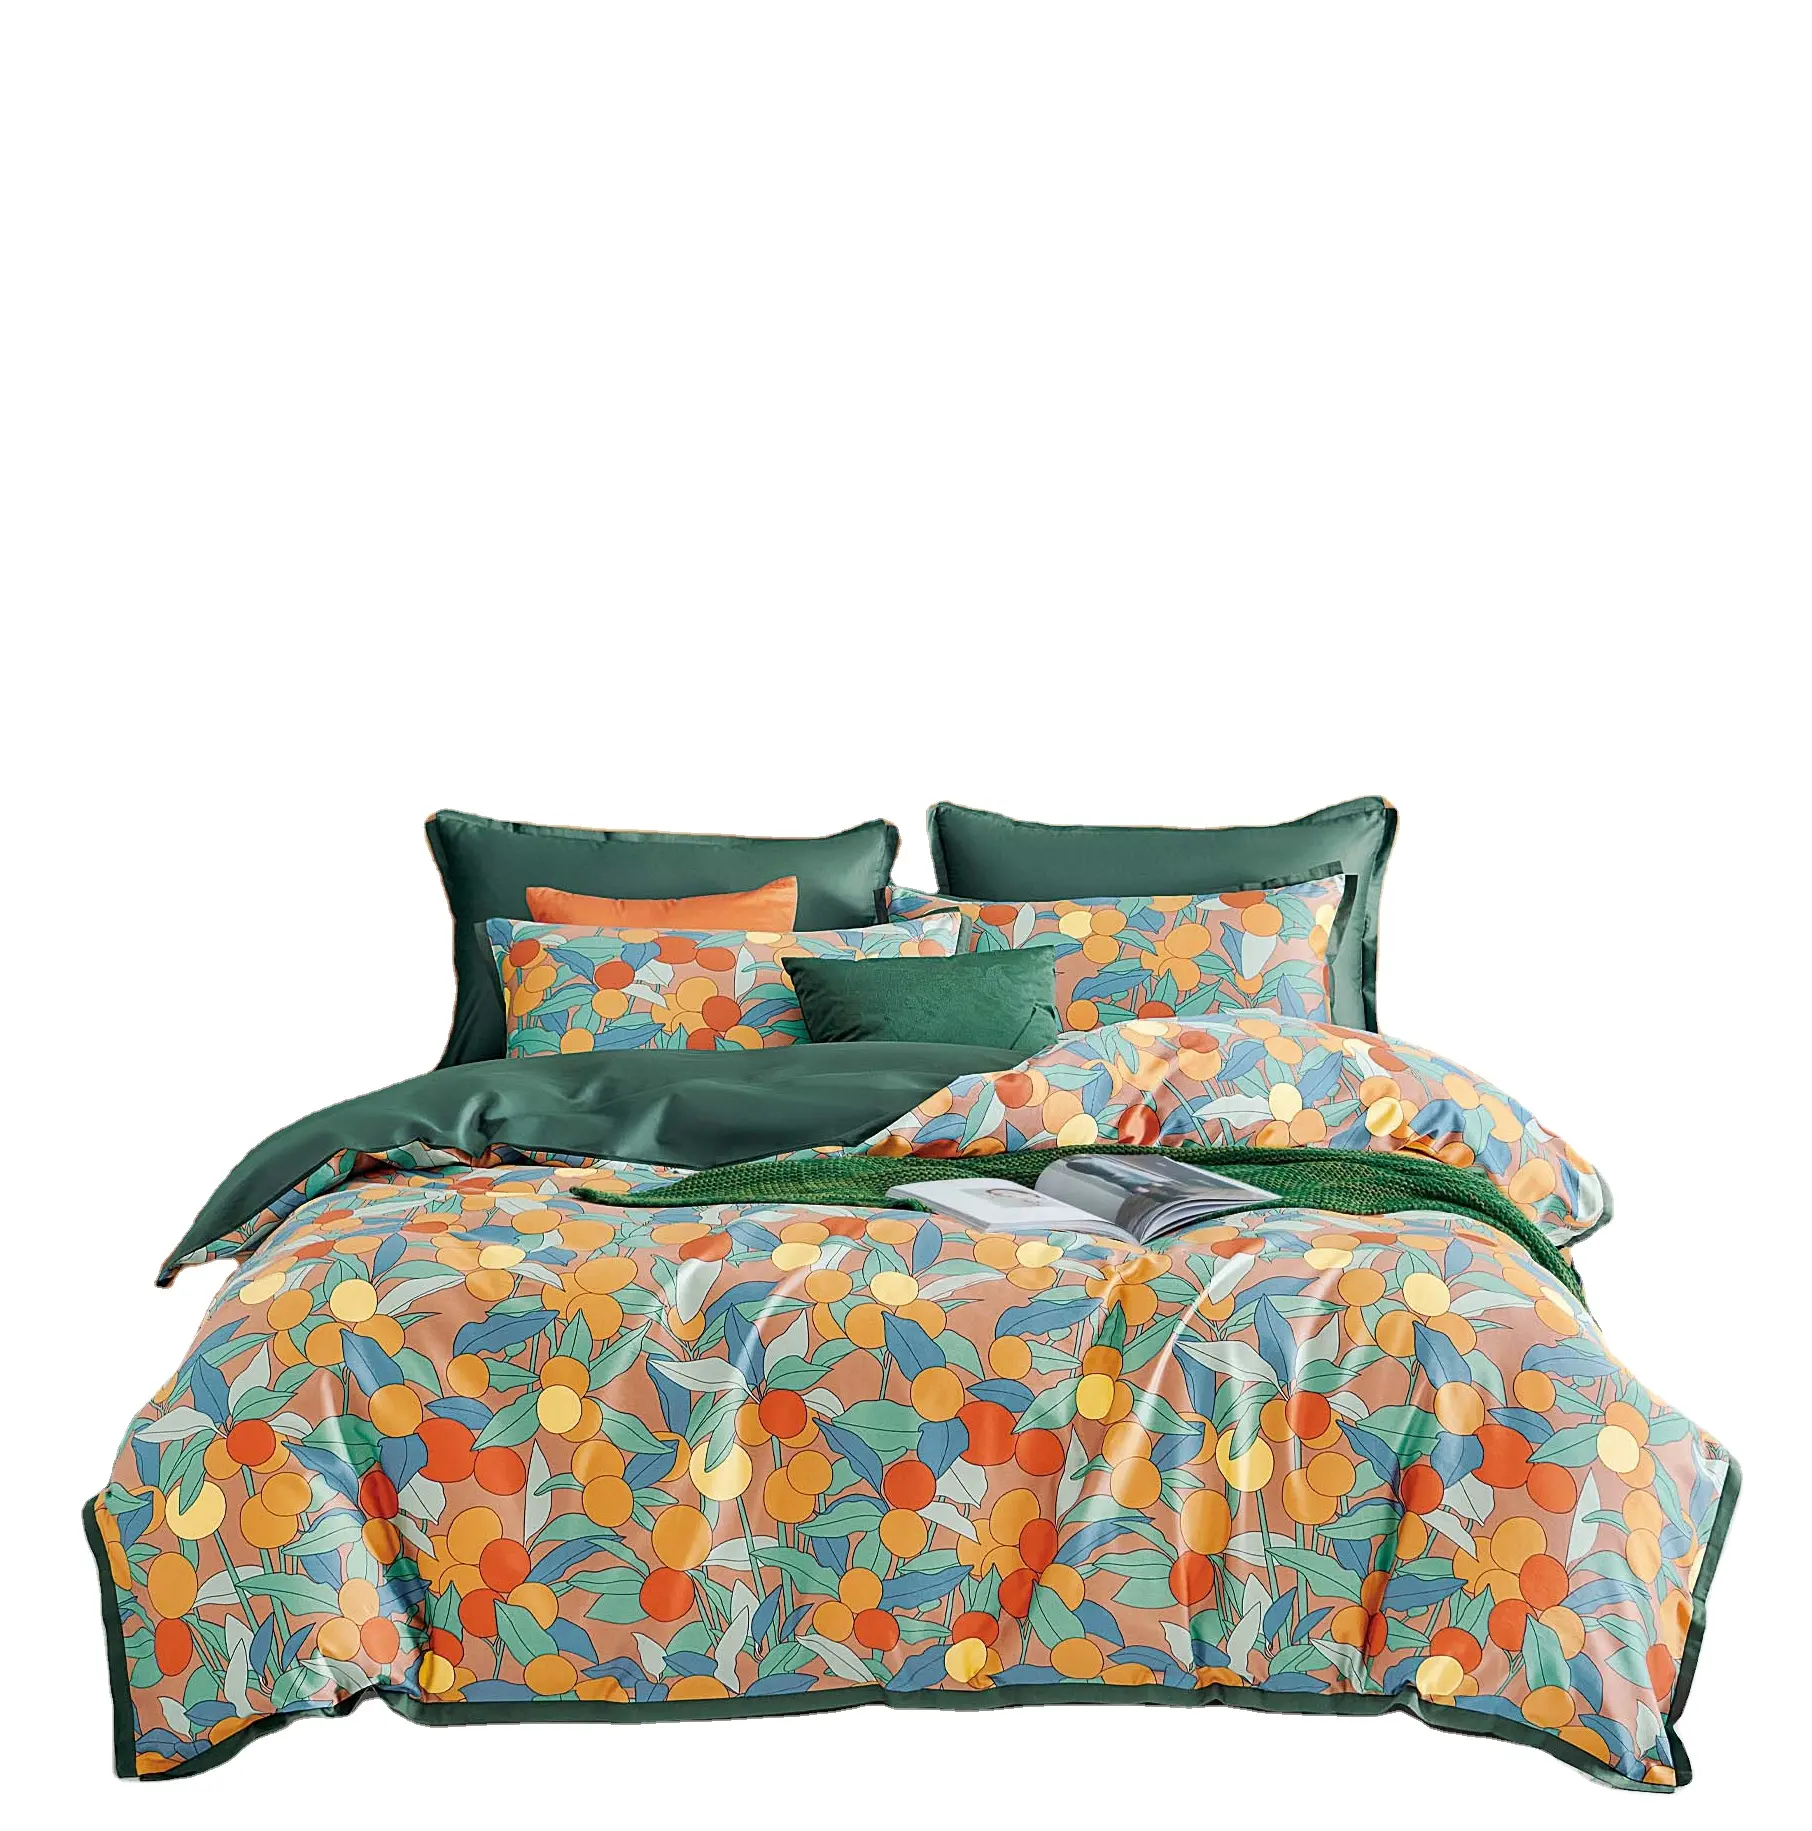 bed linen cotton Print Luxury cotton bedding set 100% cotton duvet cover set